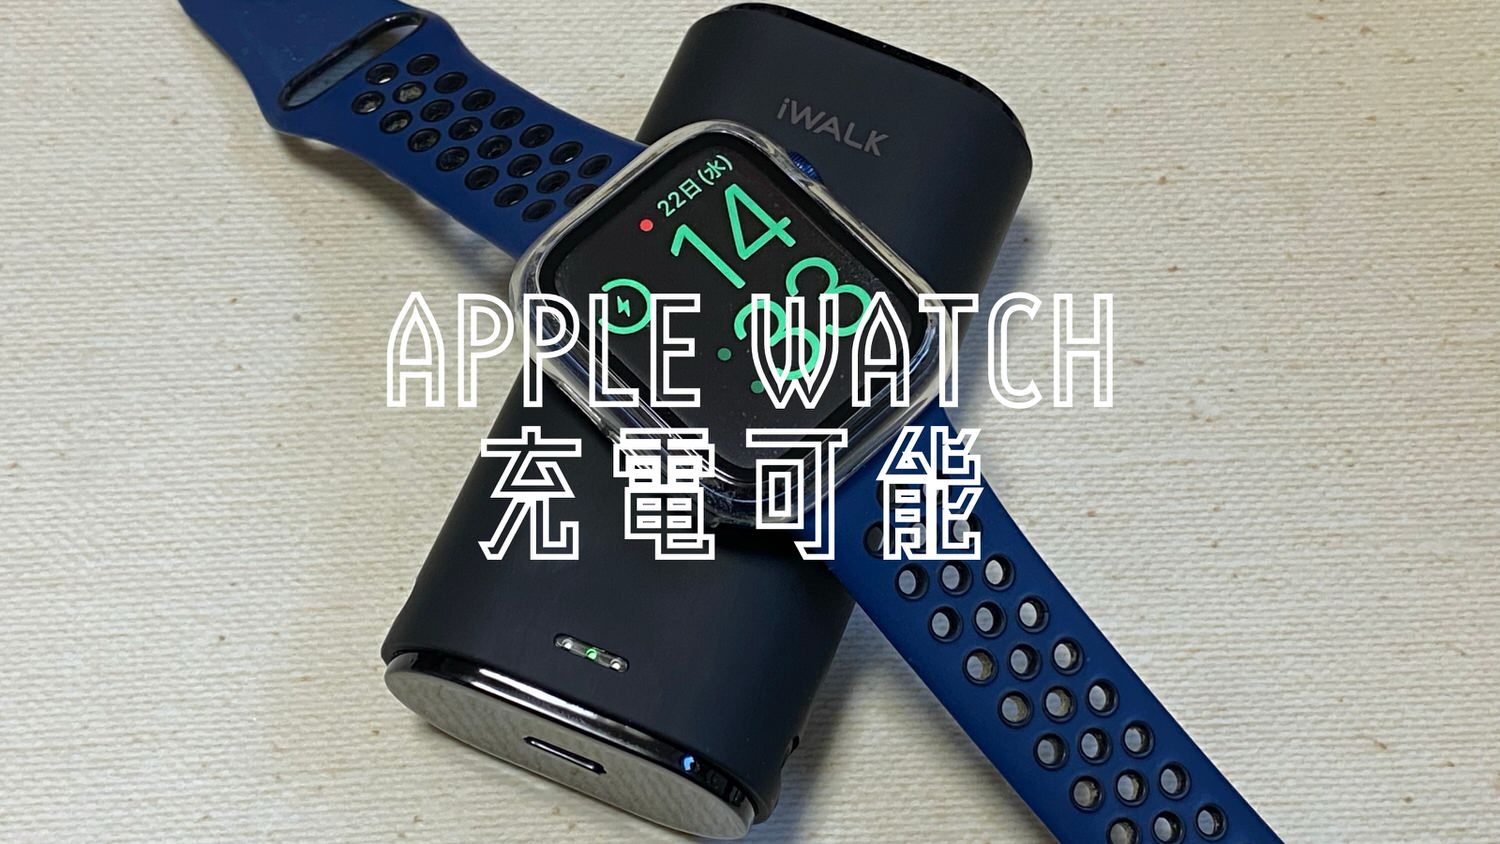 Apple watch iwalk 24000 title